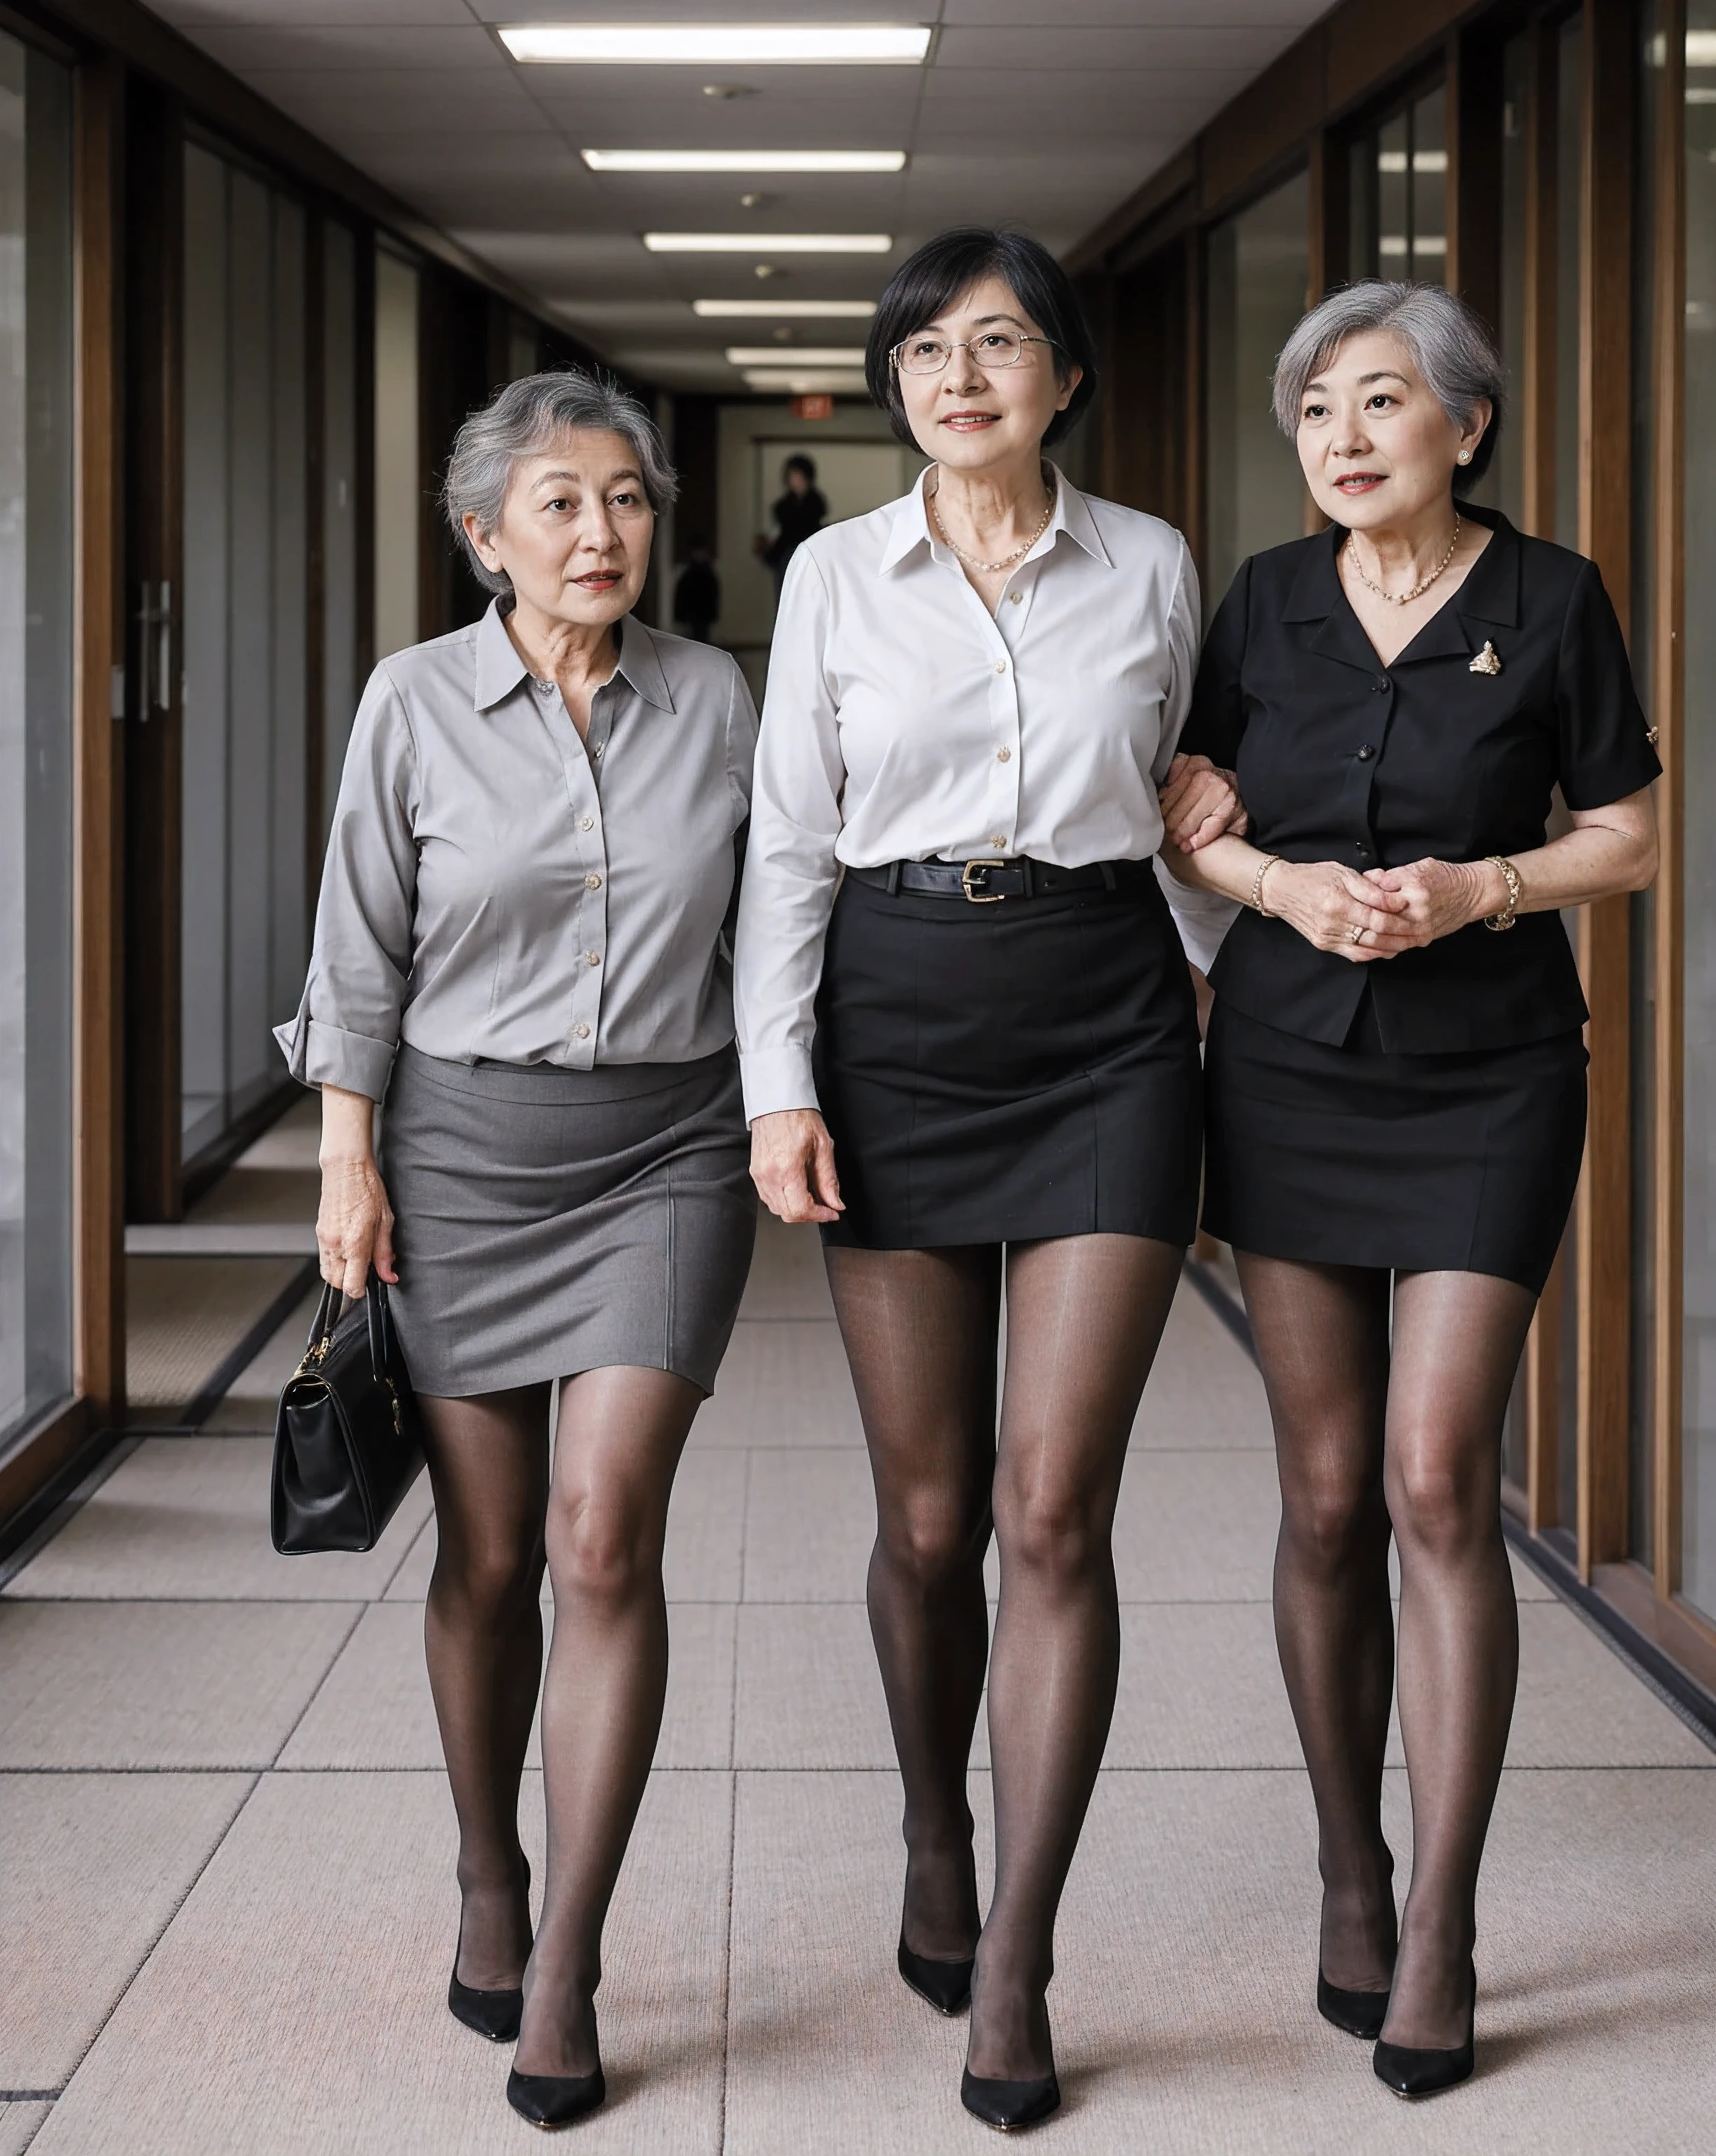 ผู้หญิงญี่ปุ่น 4 คน, เป็นผู้ใหญ่, ผู้สูงอายุ, แก่กว่า, เอเชีย, น่าเหนื่อยหน่าย , เนิร์ด, สัดส่วนที่น่าทึ่ง, ถุงน่องเชียร์สีเทา, คุณภาพดีที่สุด, เนิร์ด old black office lady น่าเหนื่อยหน่าย an a white blouse and short black skirt, คุณยายขาอ้วน, เต็มตัว, รองเท้าส้นสูง, ขาสูงตระหง่านอยู่เหนือคุณ, ยืน